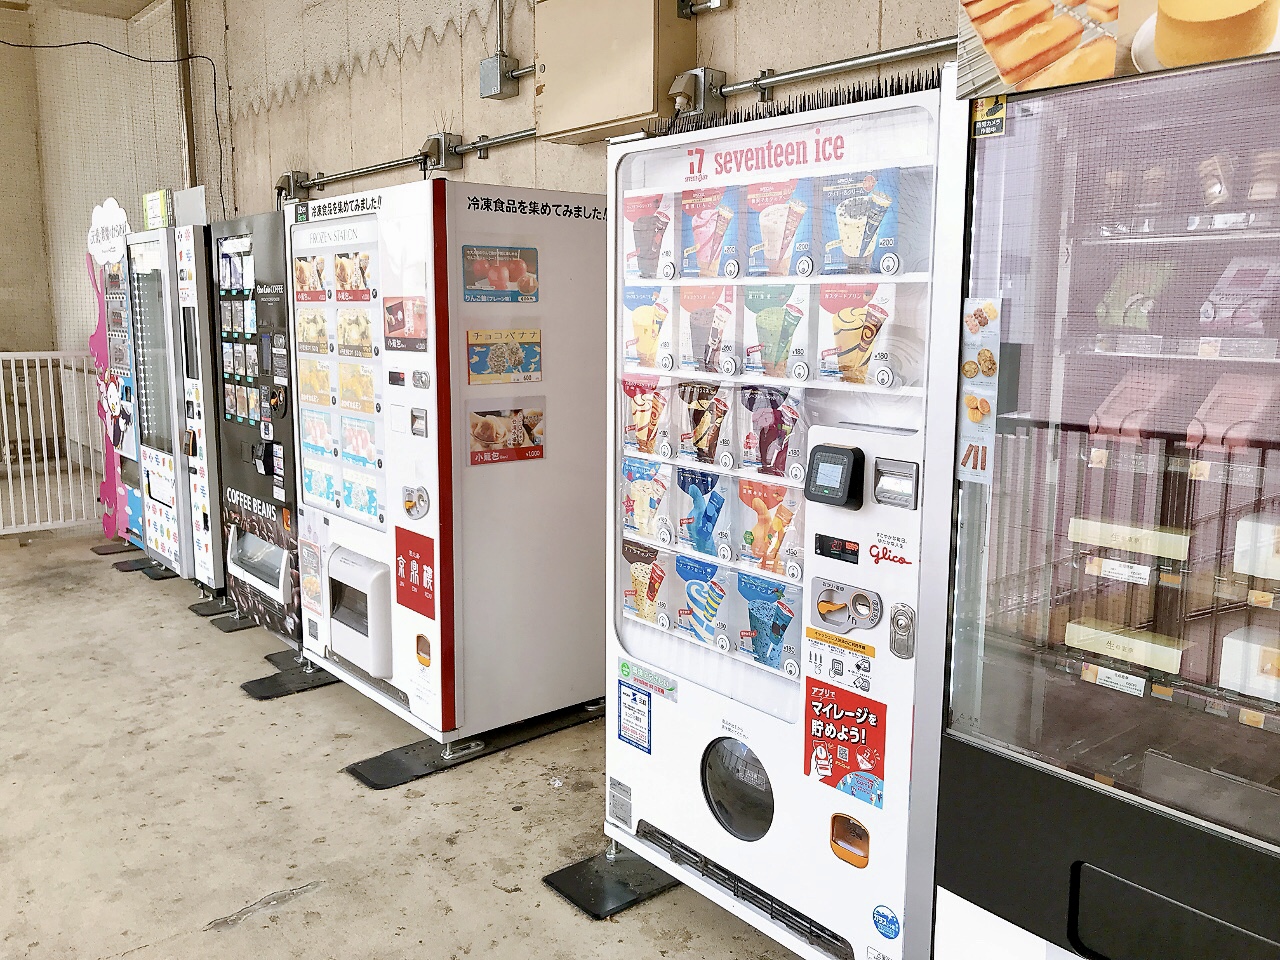 地下鉄上永谷駅の改札付近にある自販機